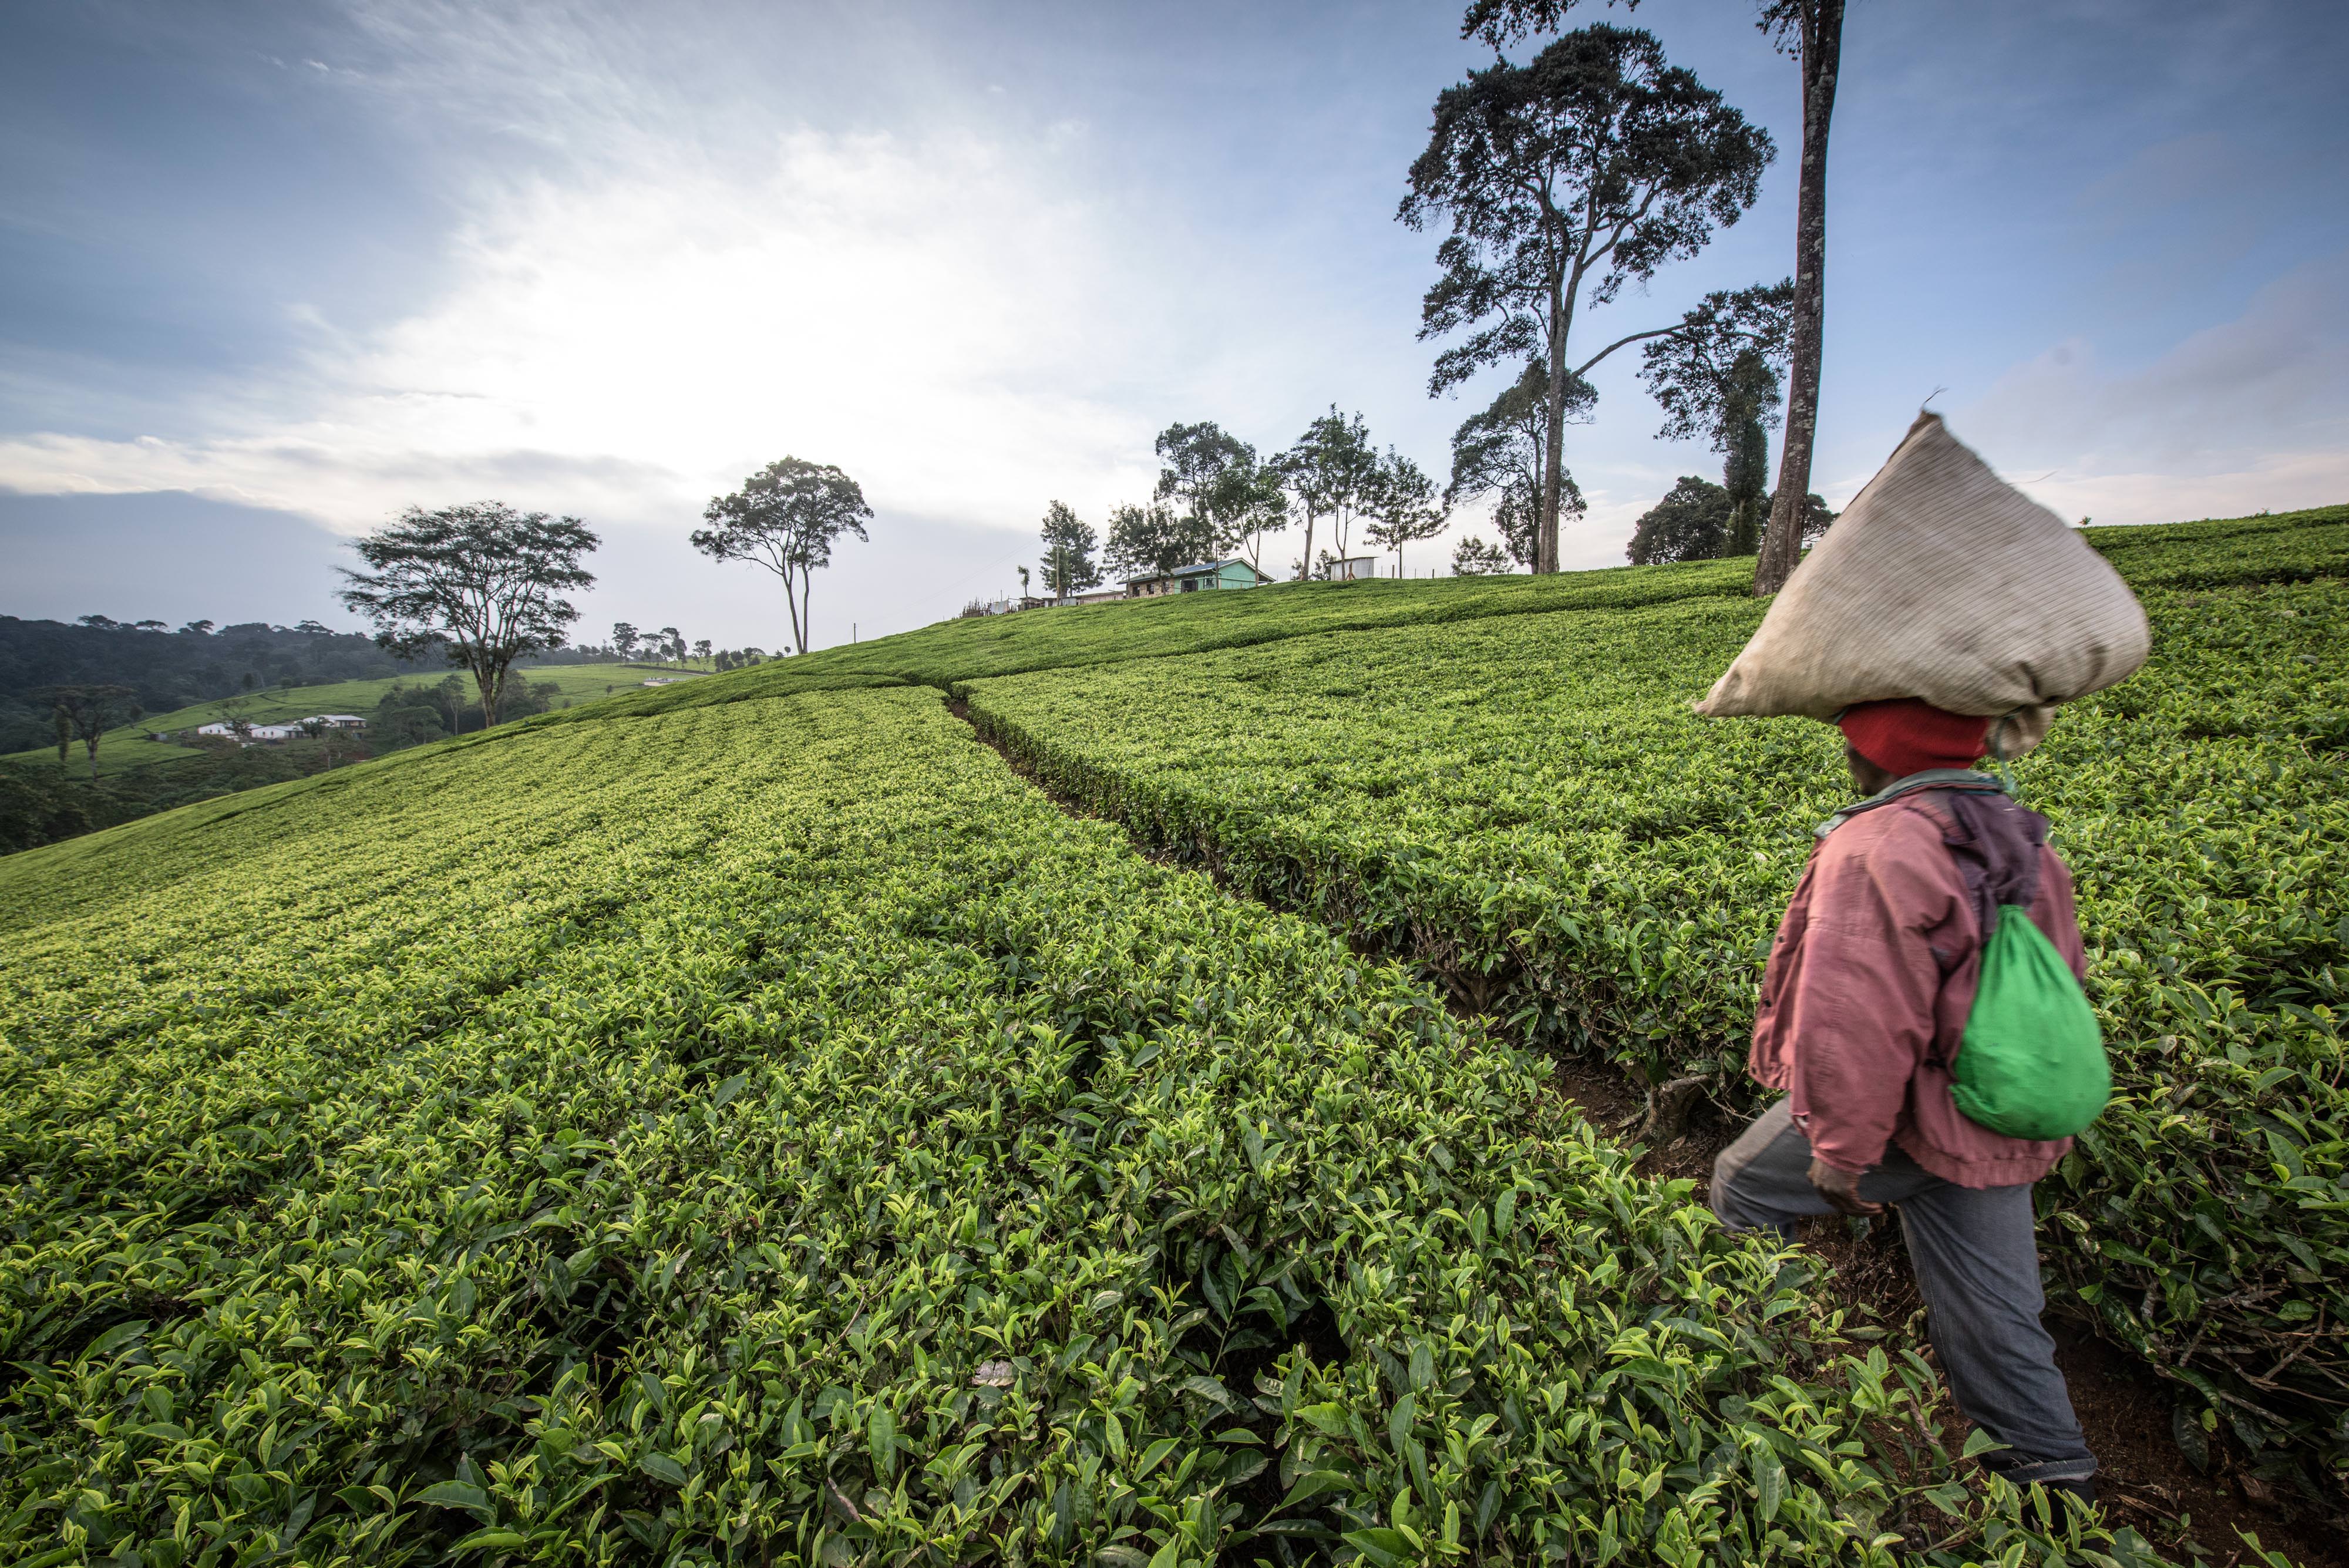 Picking tea leaves in Kenya